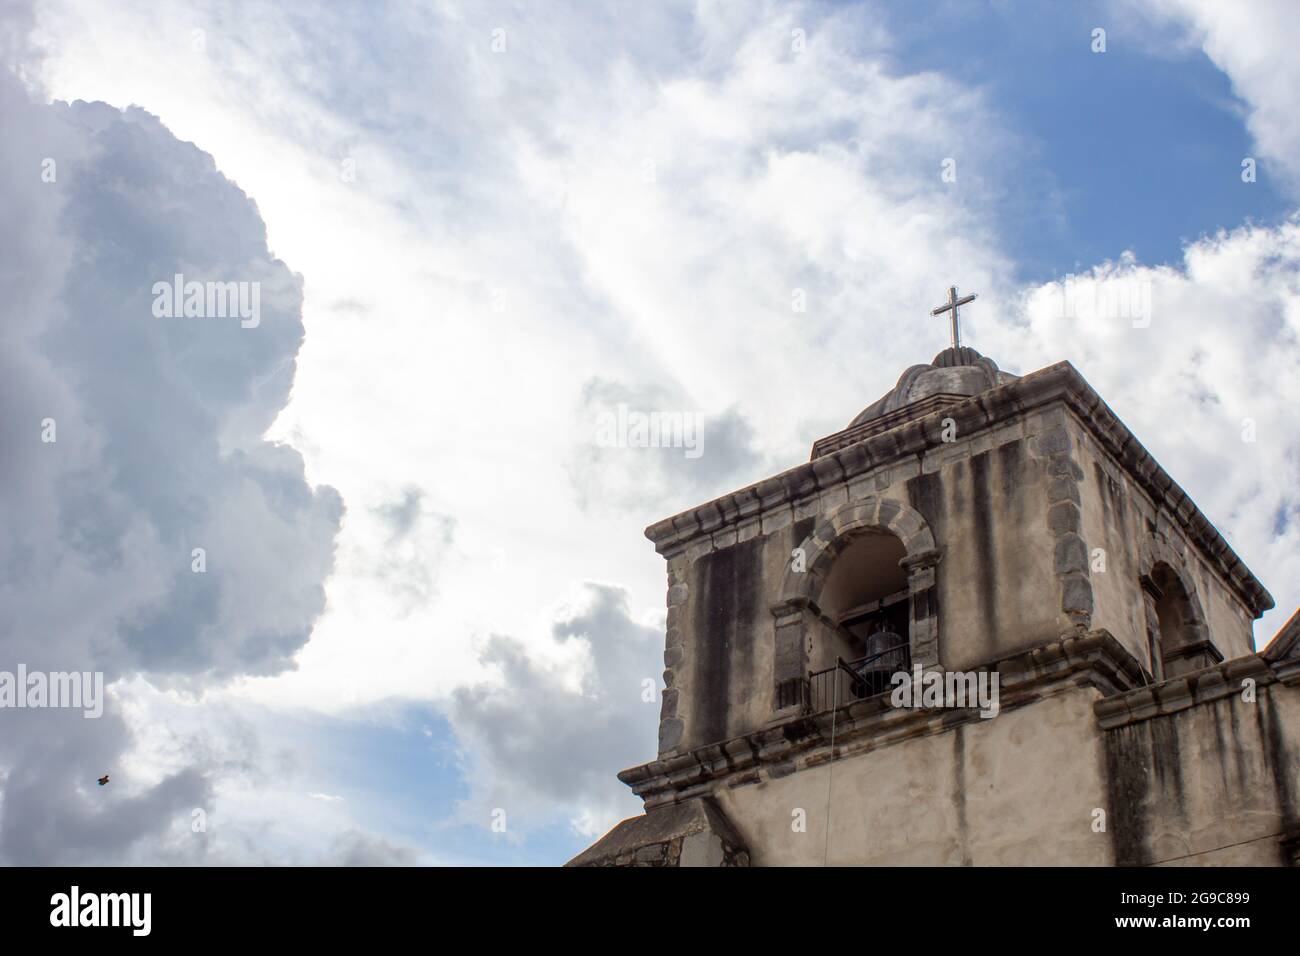 A low angle shot of the Santa Catarina temple in Ahuachapan, Jalisco, Mexico Stock Photo